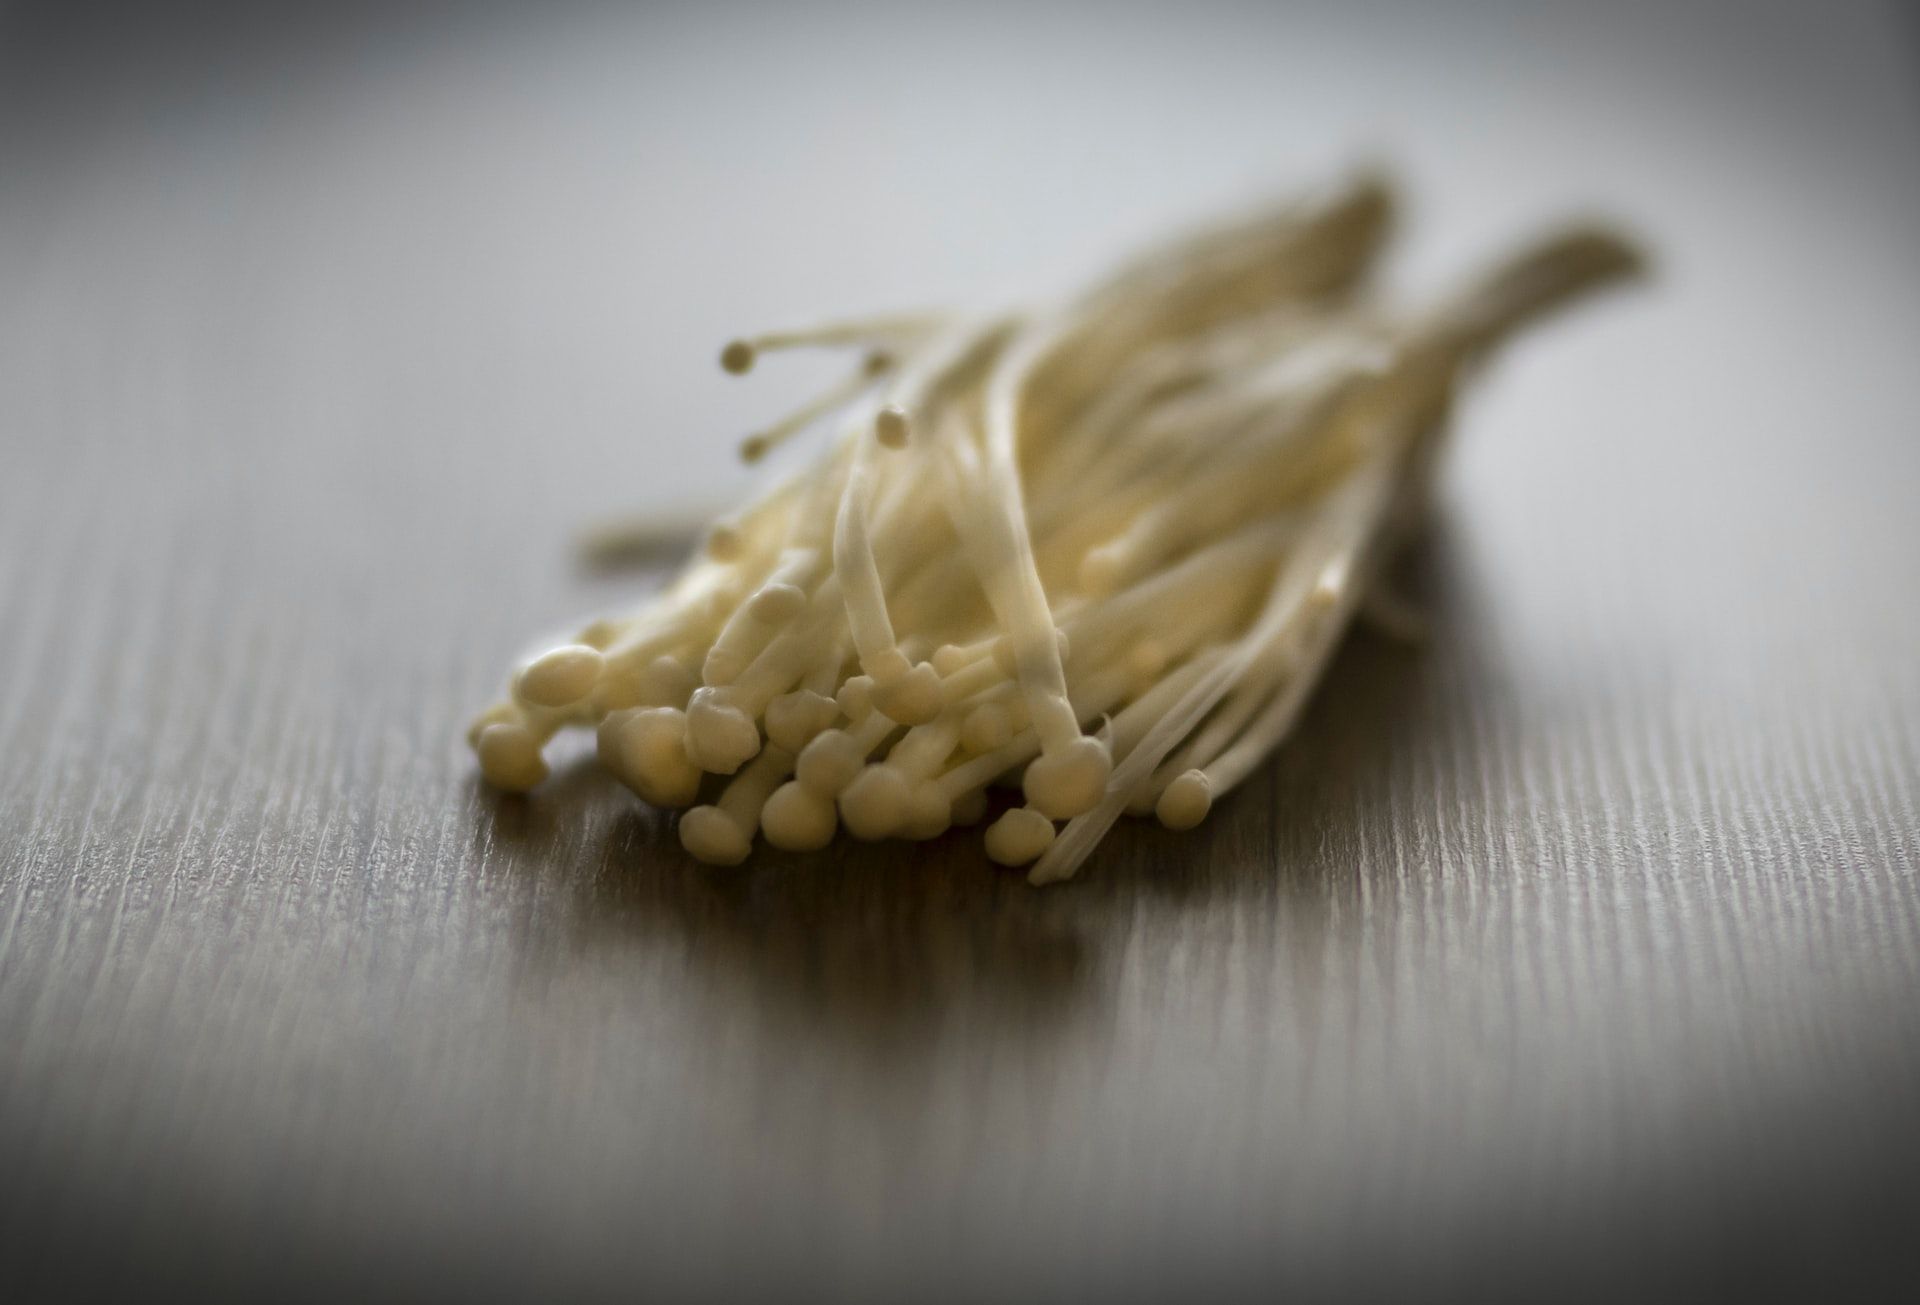 Lezat dan Kaya Manfaat, Ini 15 Jenis Jamur yang Bisa Dimakan